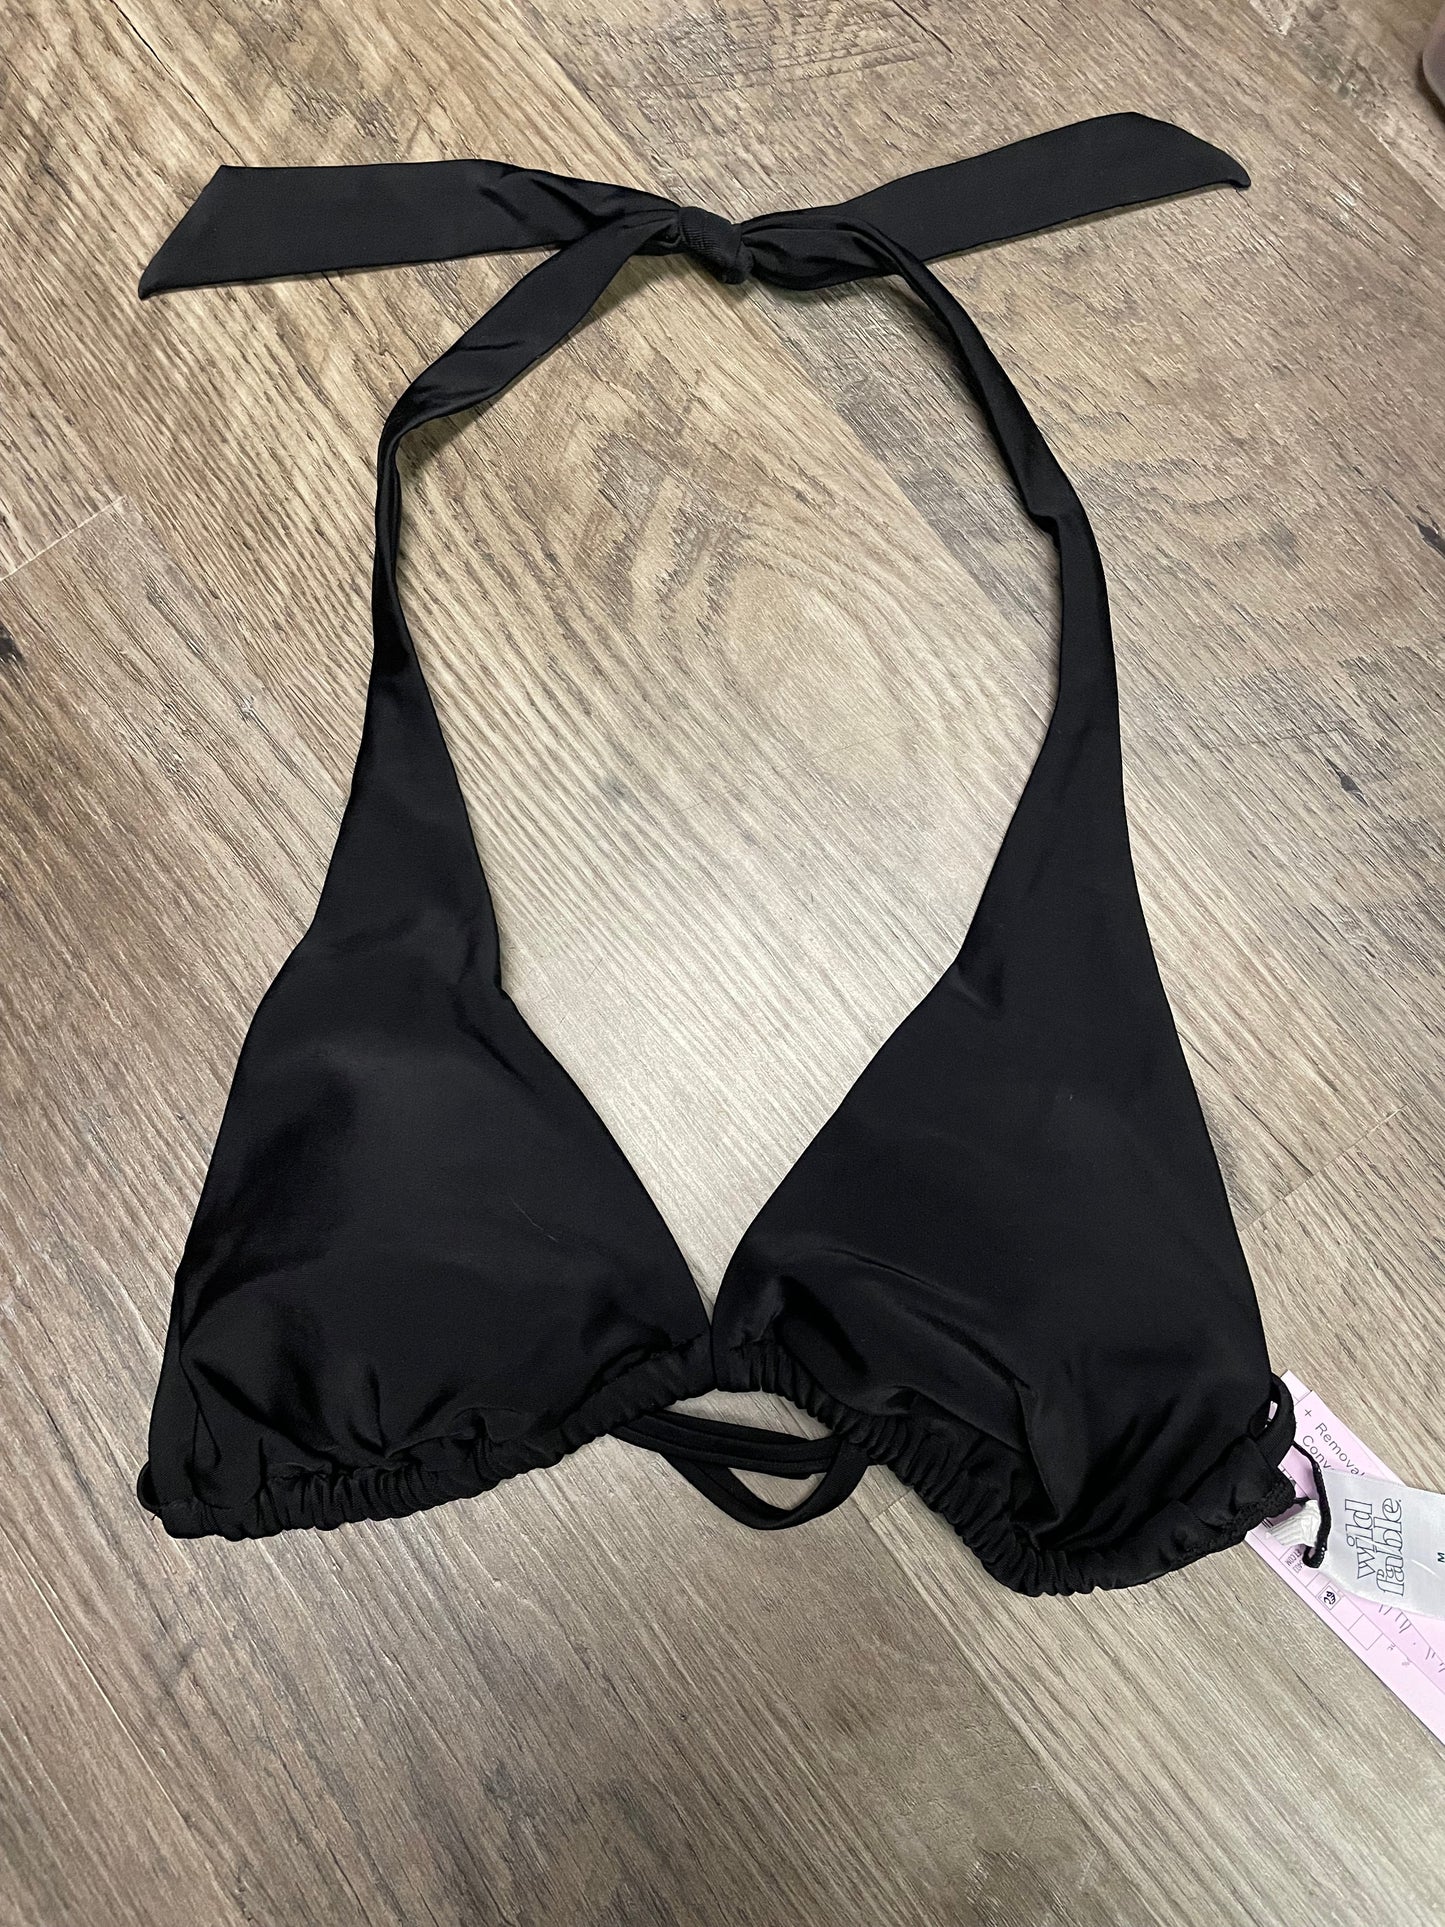 New Women XL 16 bikini top. Wild fable. Black